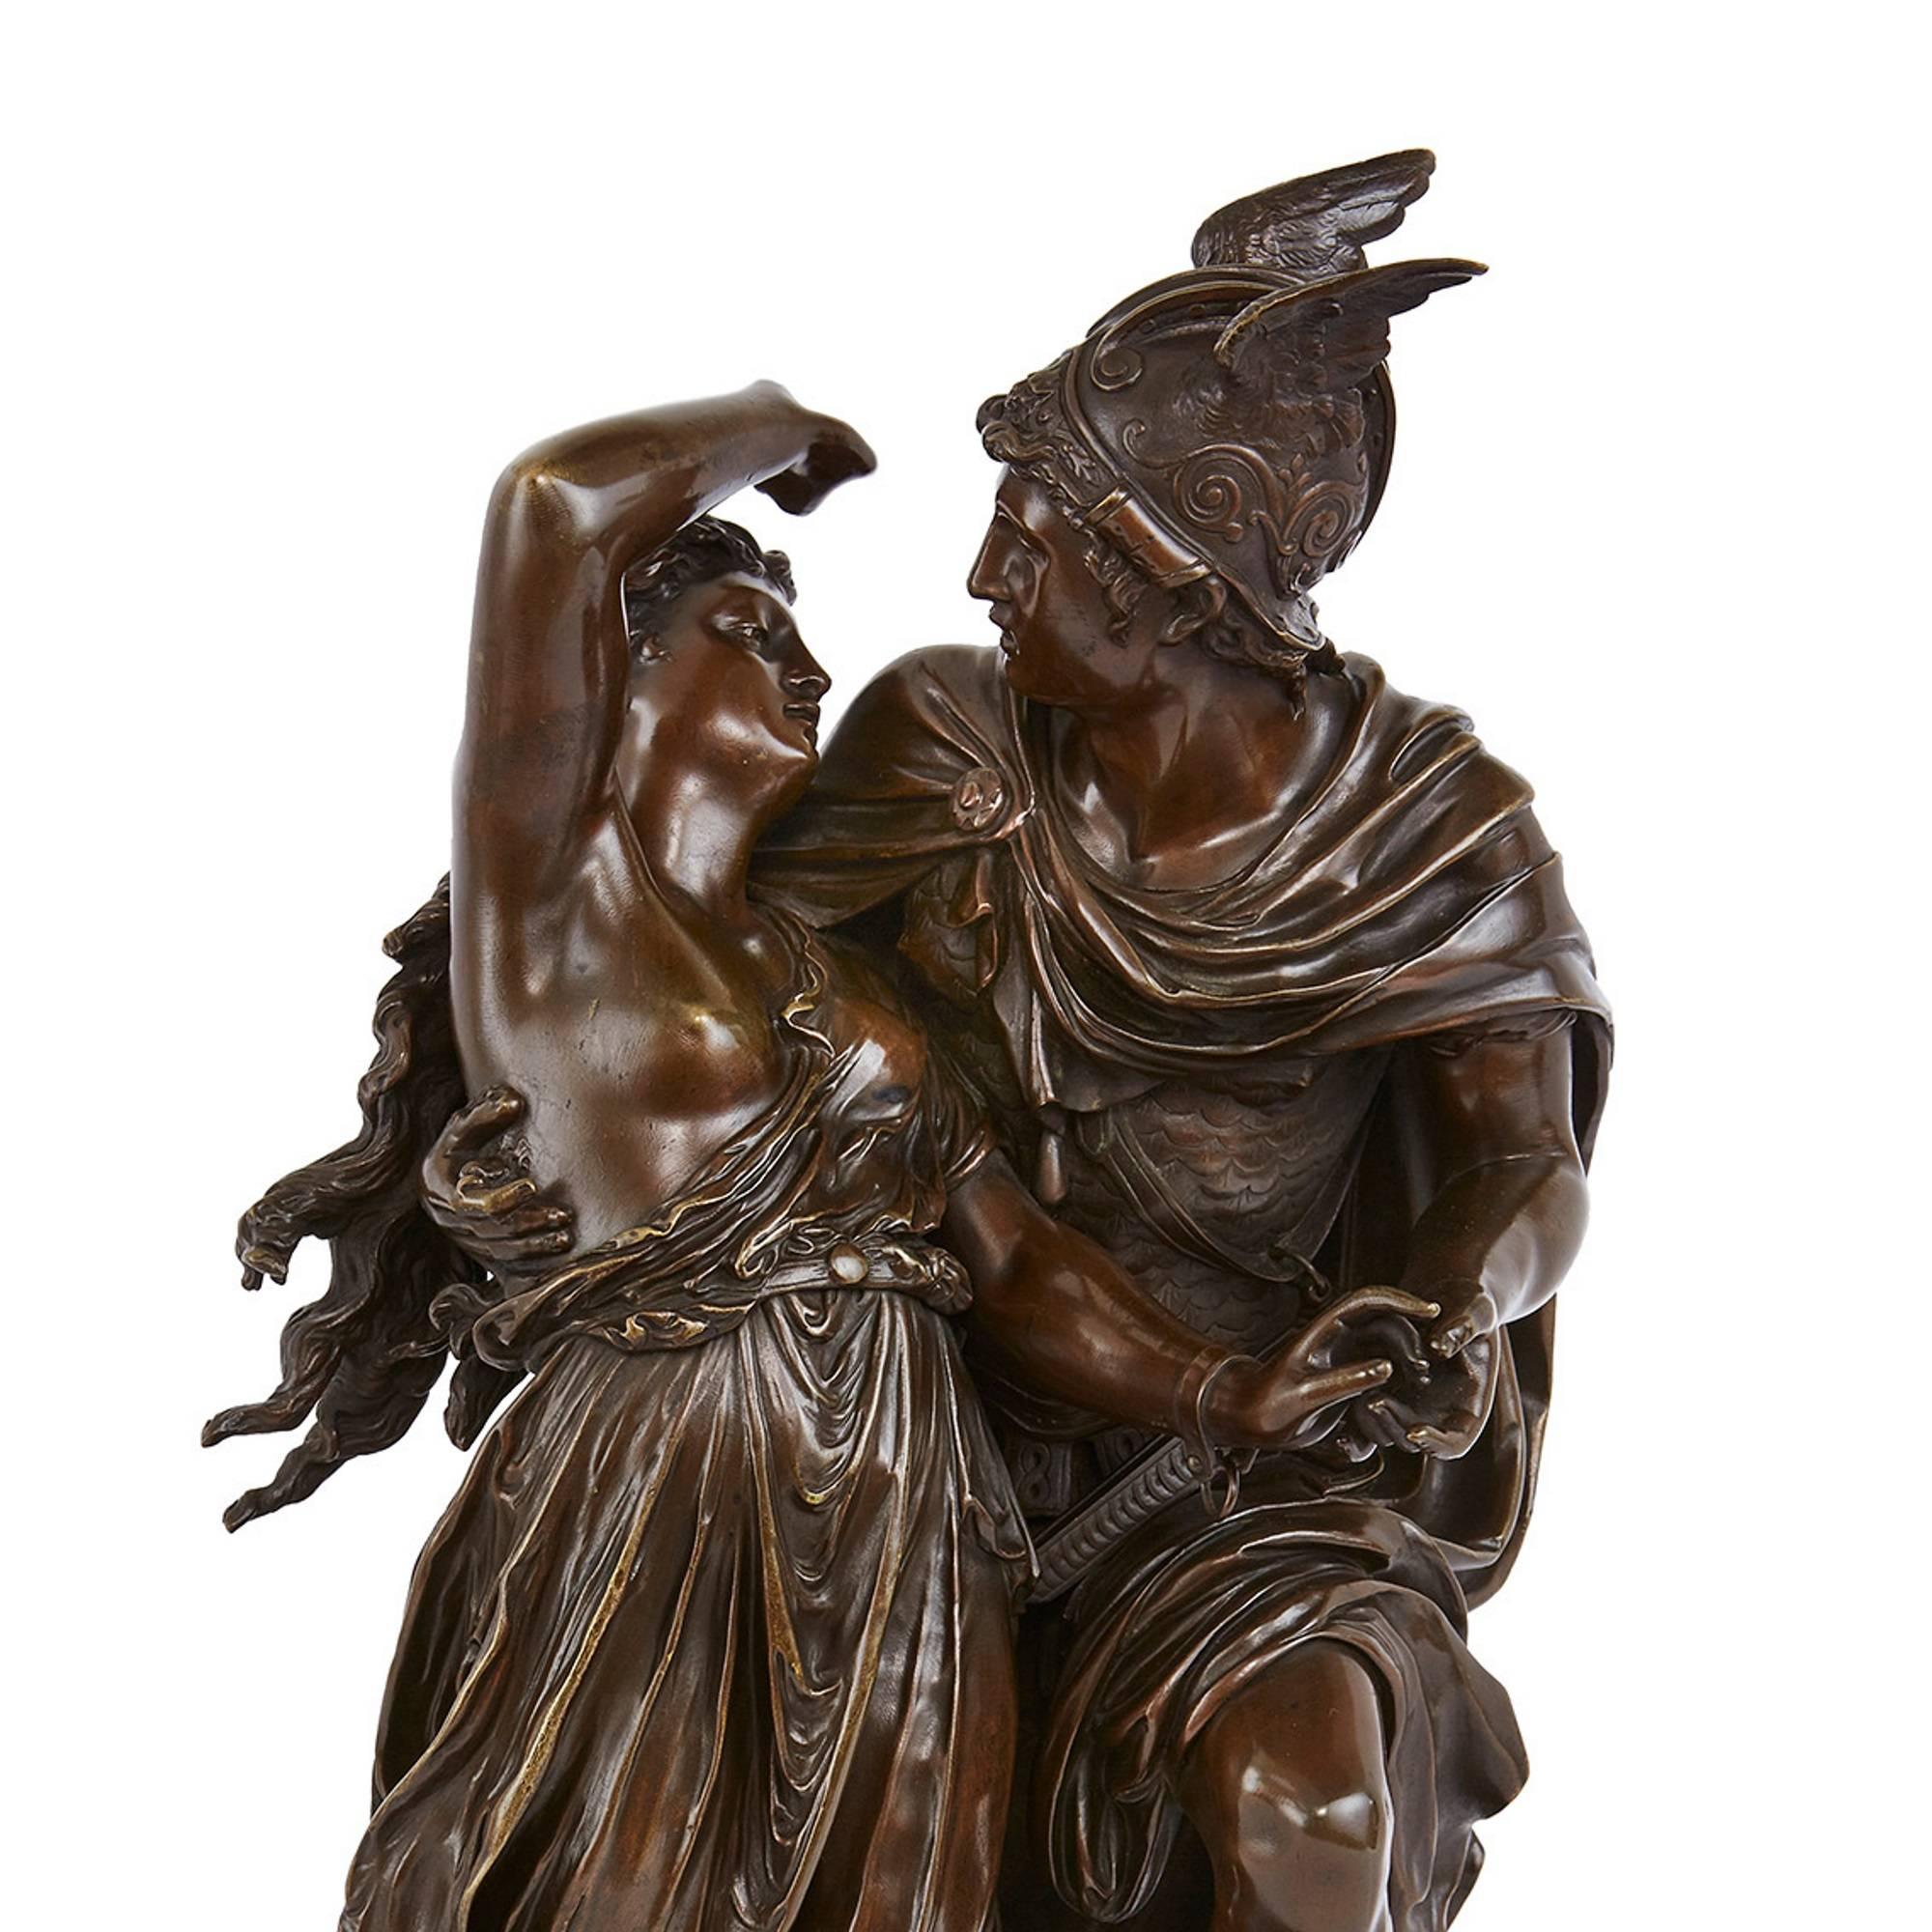 Diese schöne antike französische Skulptur stellt einen Moment aus einer der berühmtesten Erzählungen der klassischen Mythologie dar, der von Perseus und Andromeda. Das aus patinierter Bronze gefertigte und paketvergoldete Werk zeigt den Moment der